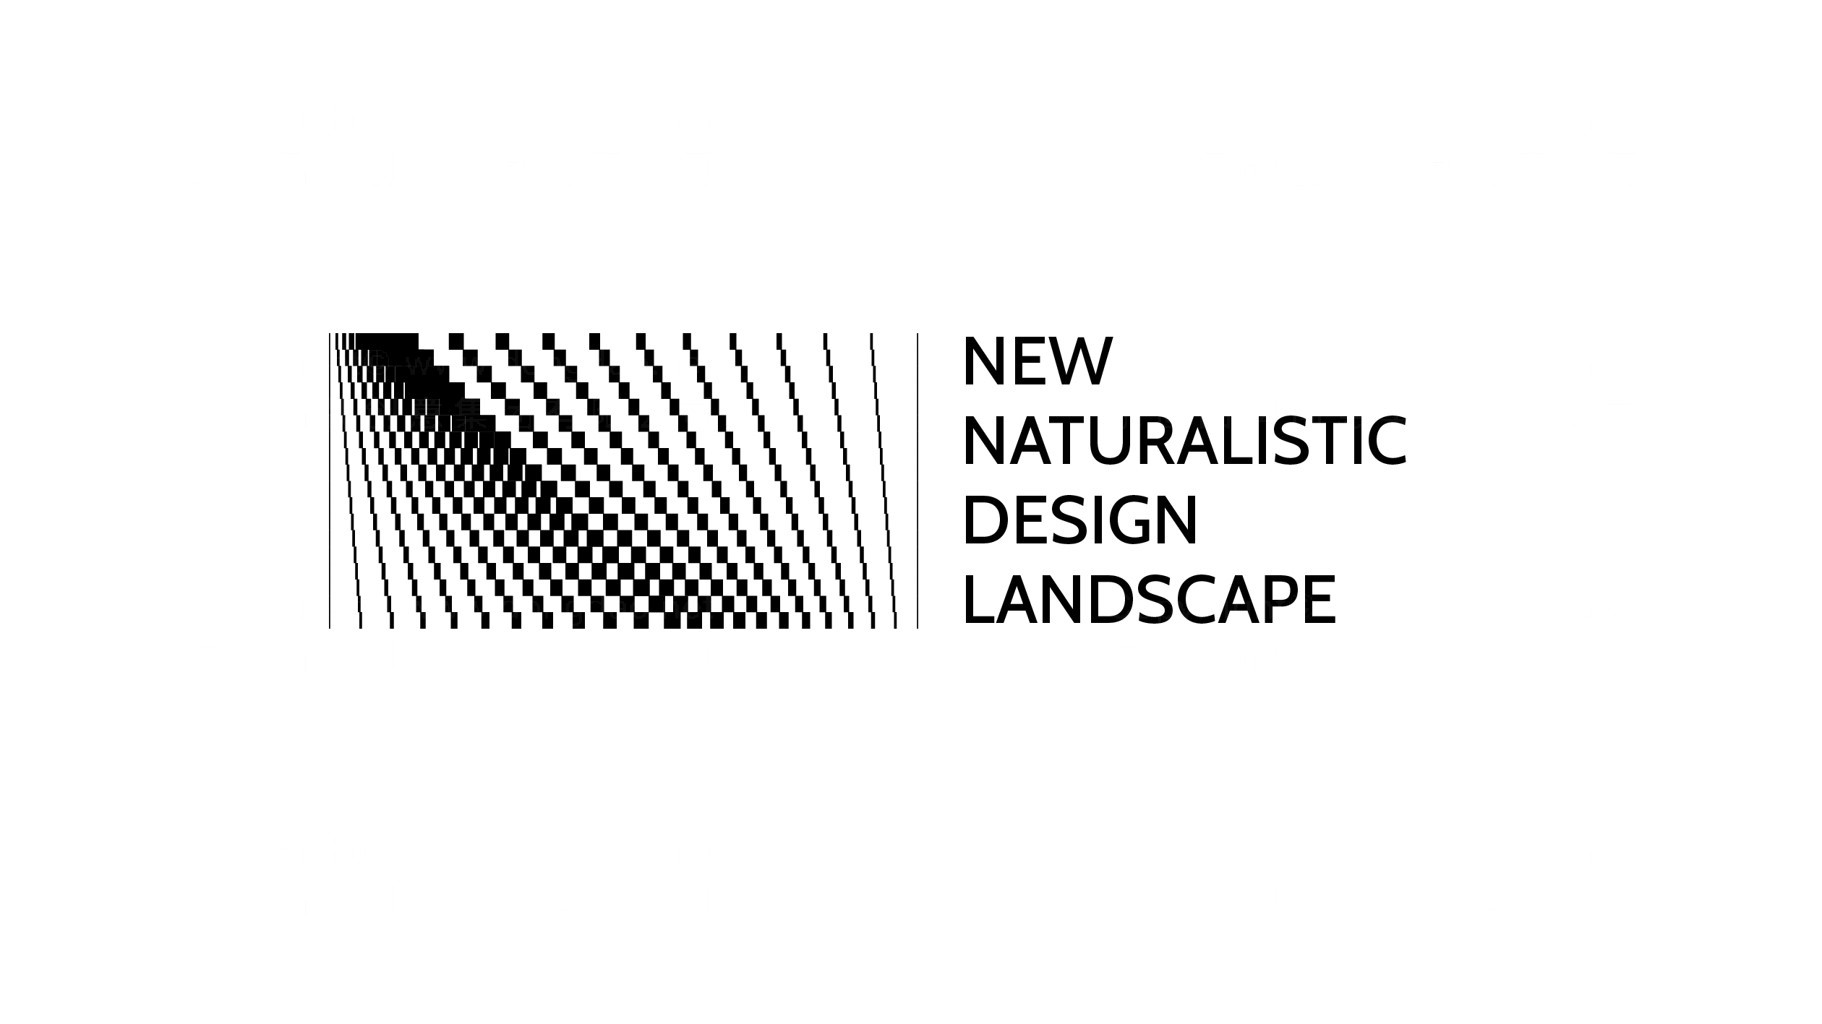 新自然主义景观logo设计图片素材